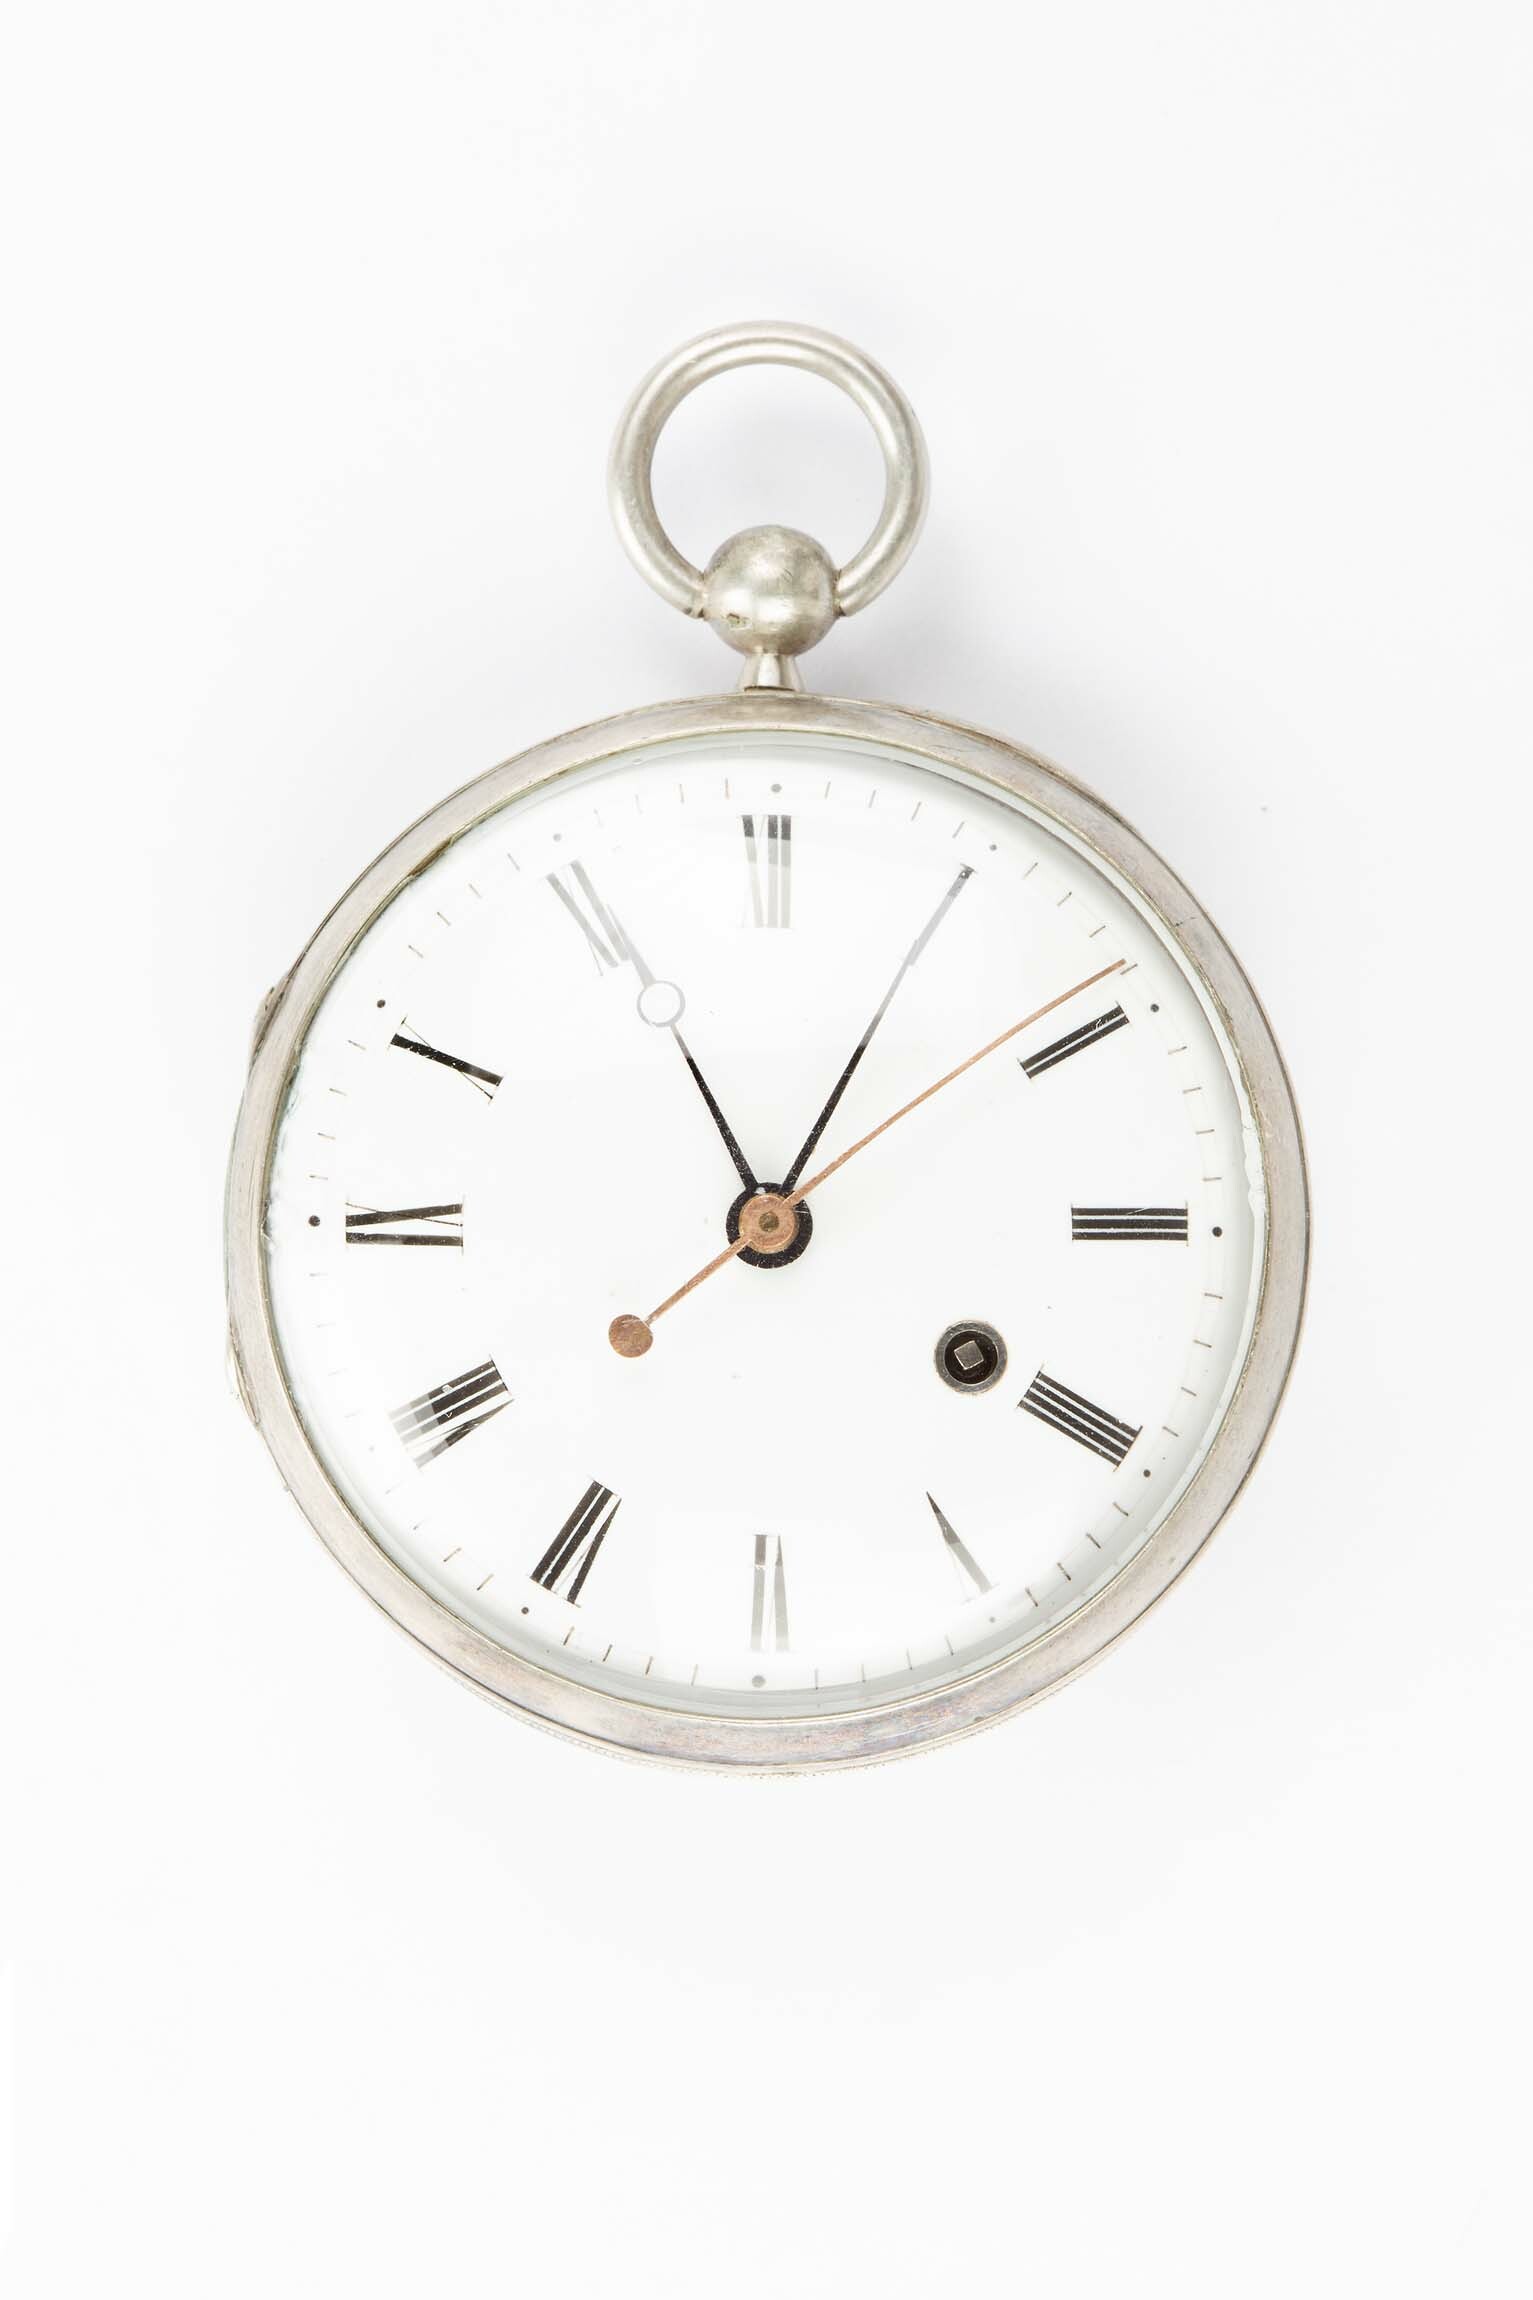 Taschenuhr, um 1800 (Deutsches Uhrenmuseum CC BY-SA)